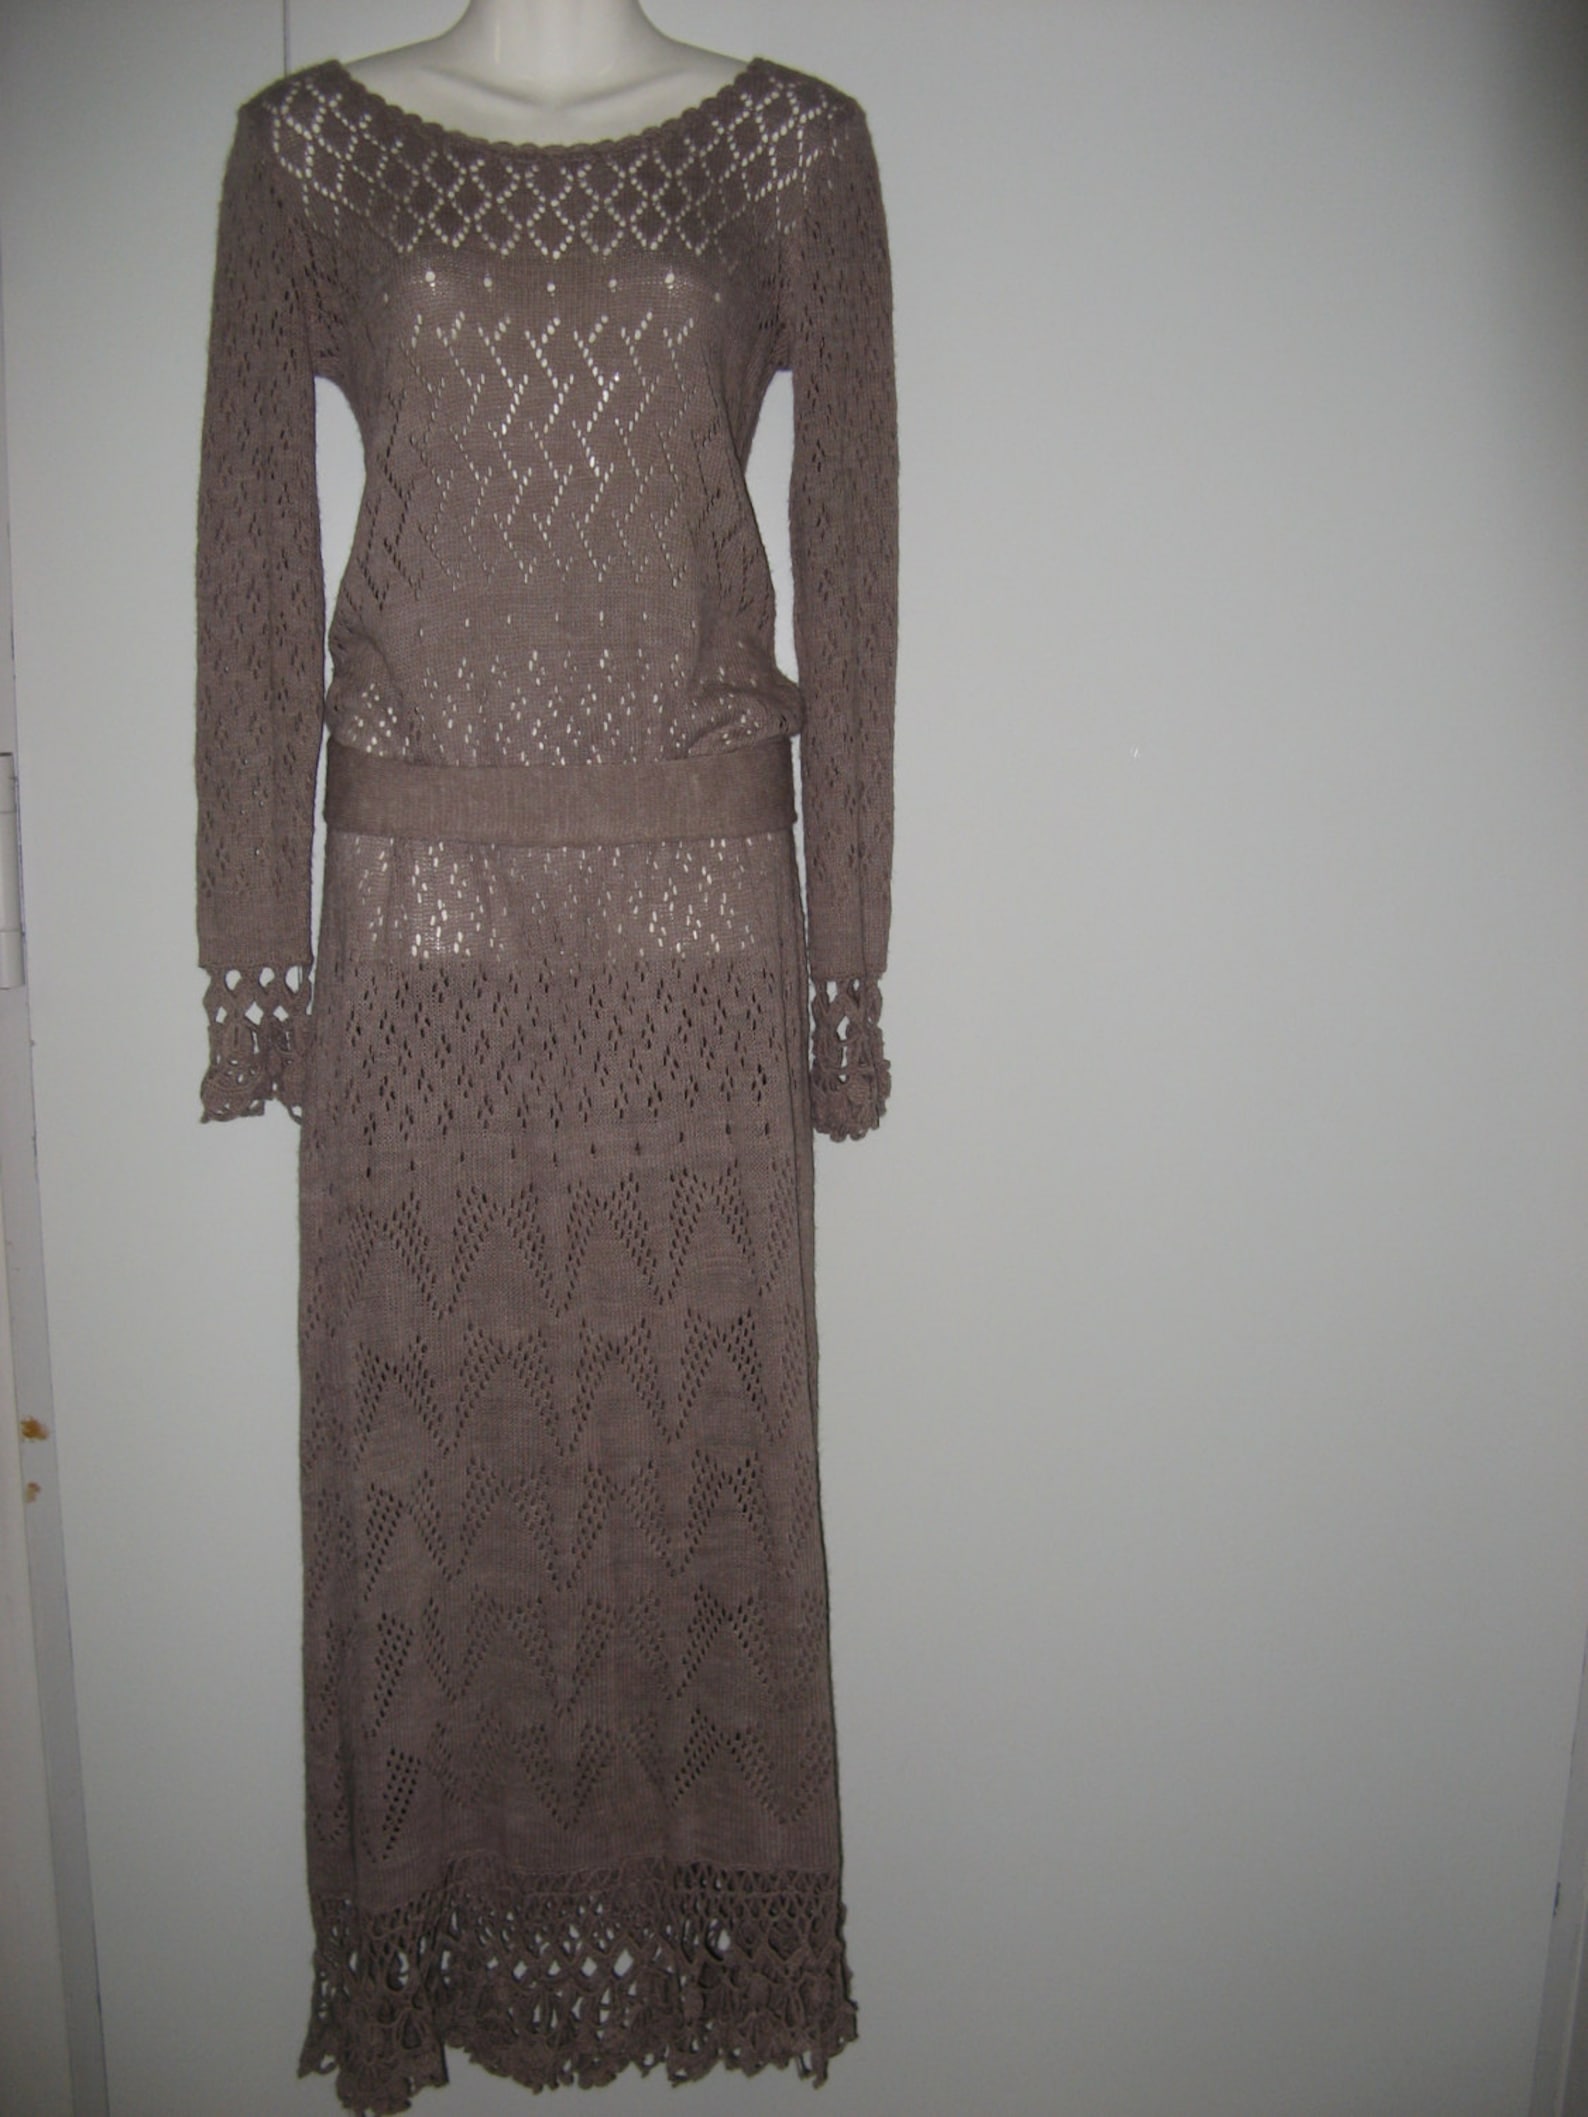 Crochet Dress Crochet Maxi Dress Crochet Lace Dress Light-gray Knitted ...